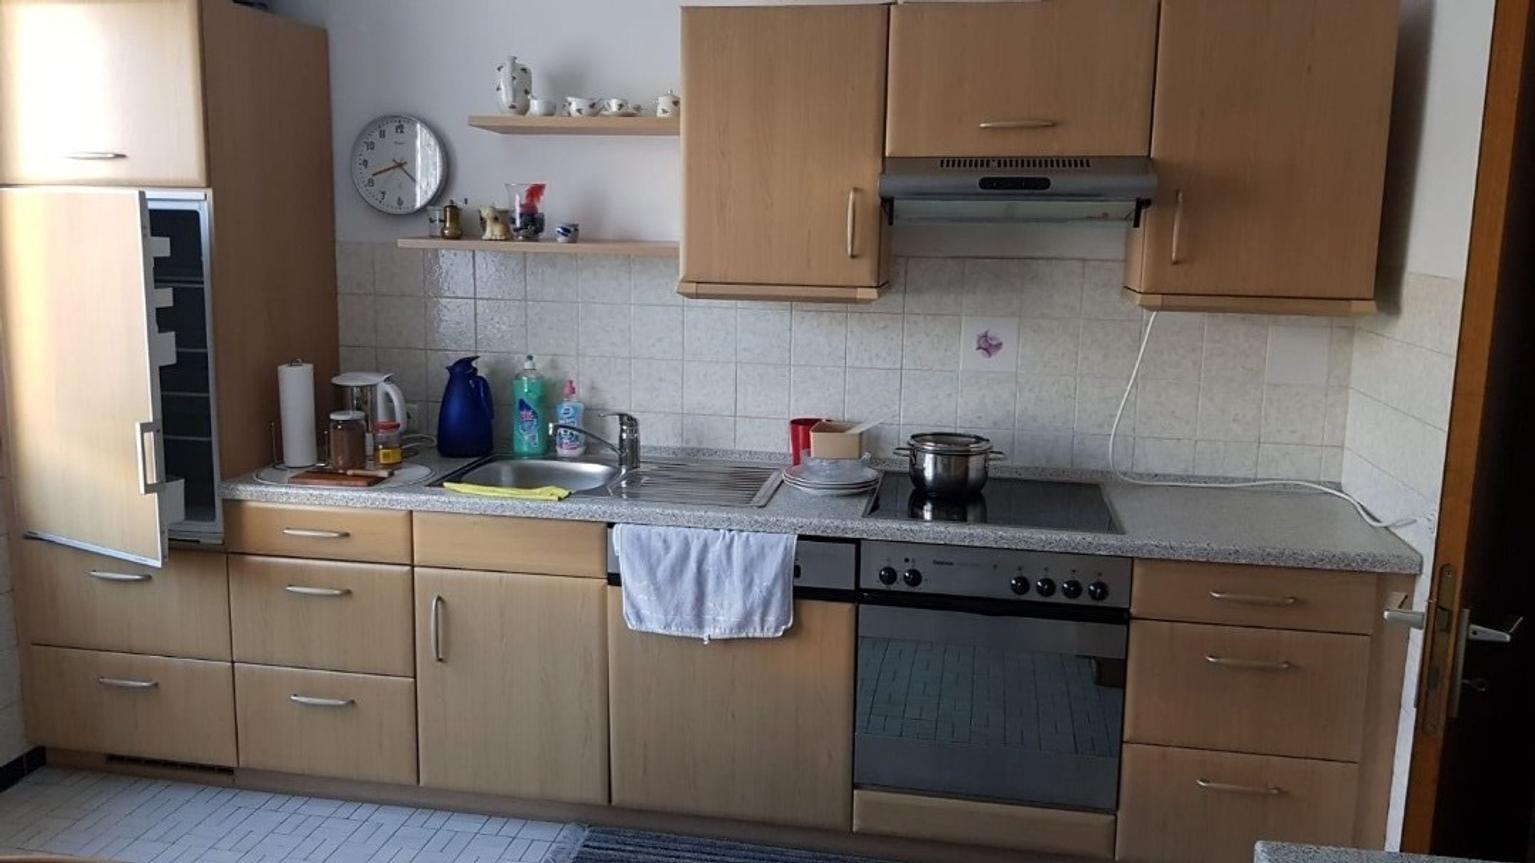 Einbauküche mit Geräte in 68169 Mannheim für 350,00 € zum ...